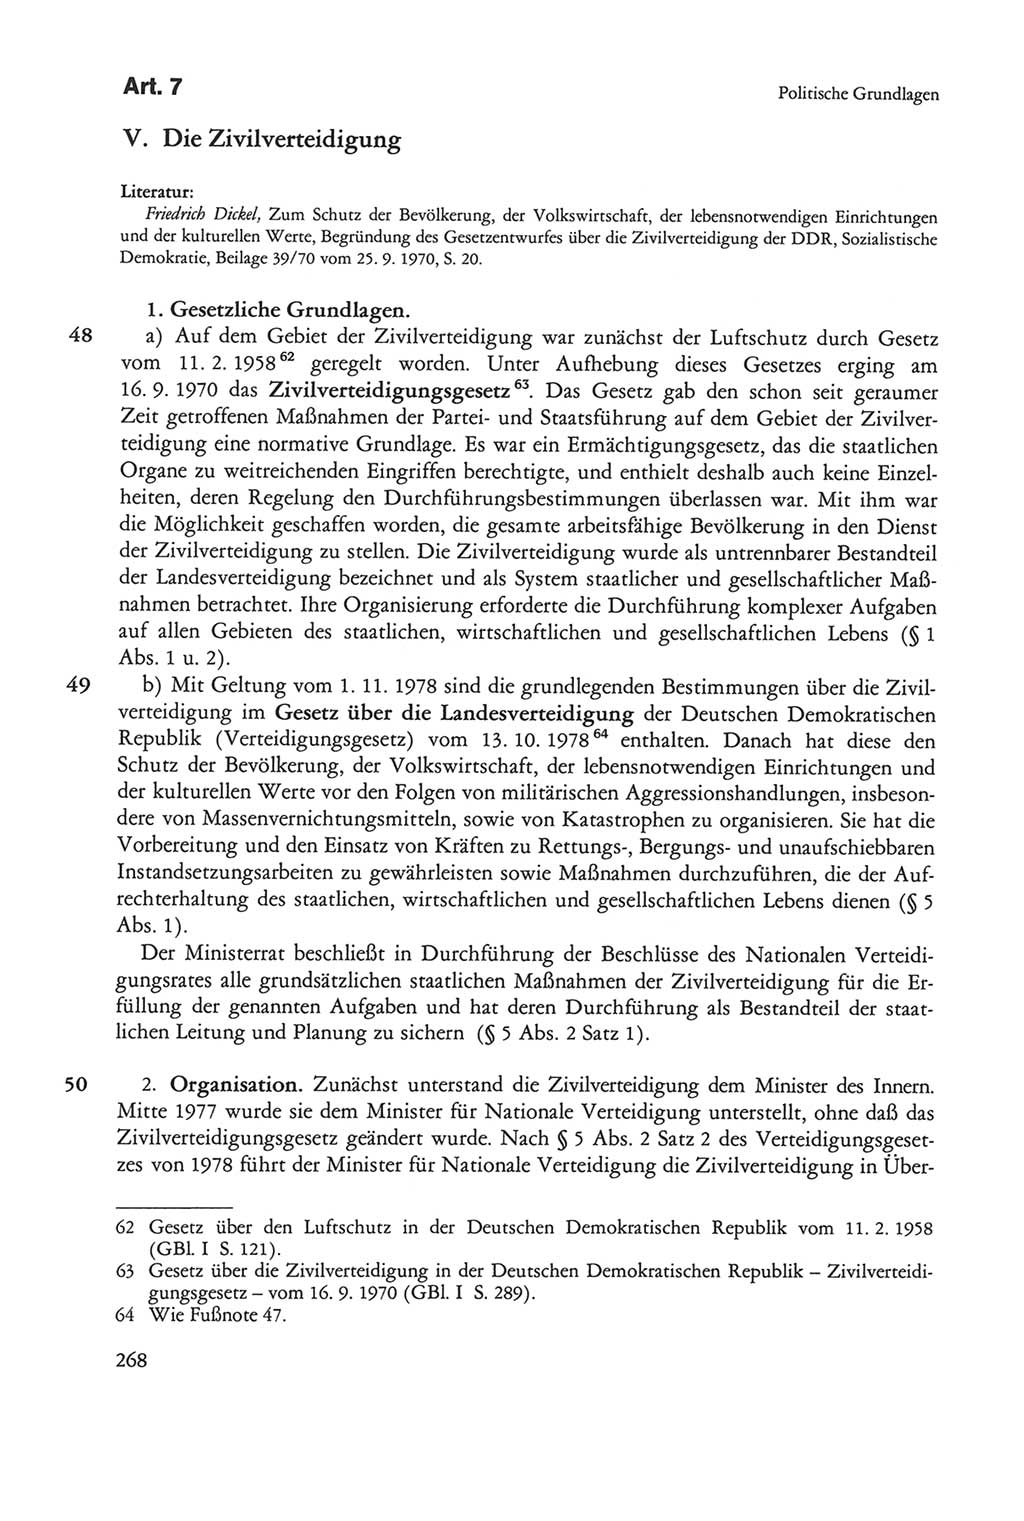 Die sozialistische Verfassung der Deutschen Demokratischen Republik (DDR), Kommentar 1982, Seite 268 (Soz. Verf. DDR Komm. 1982, S. 268)